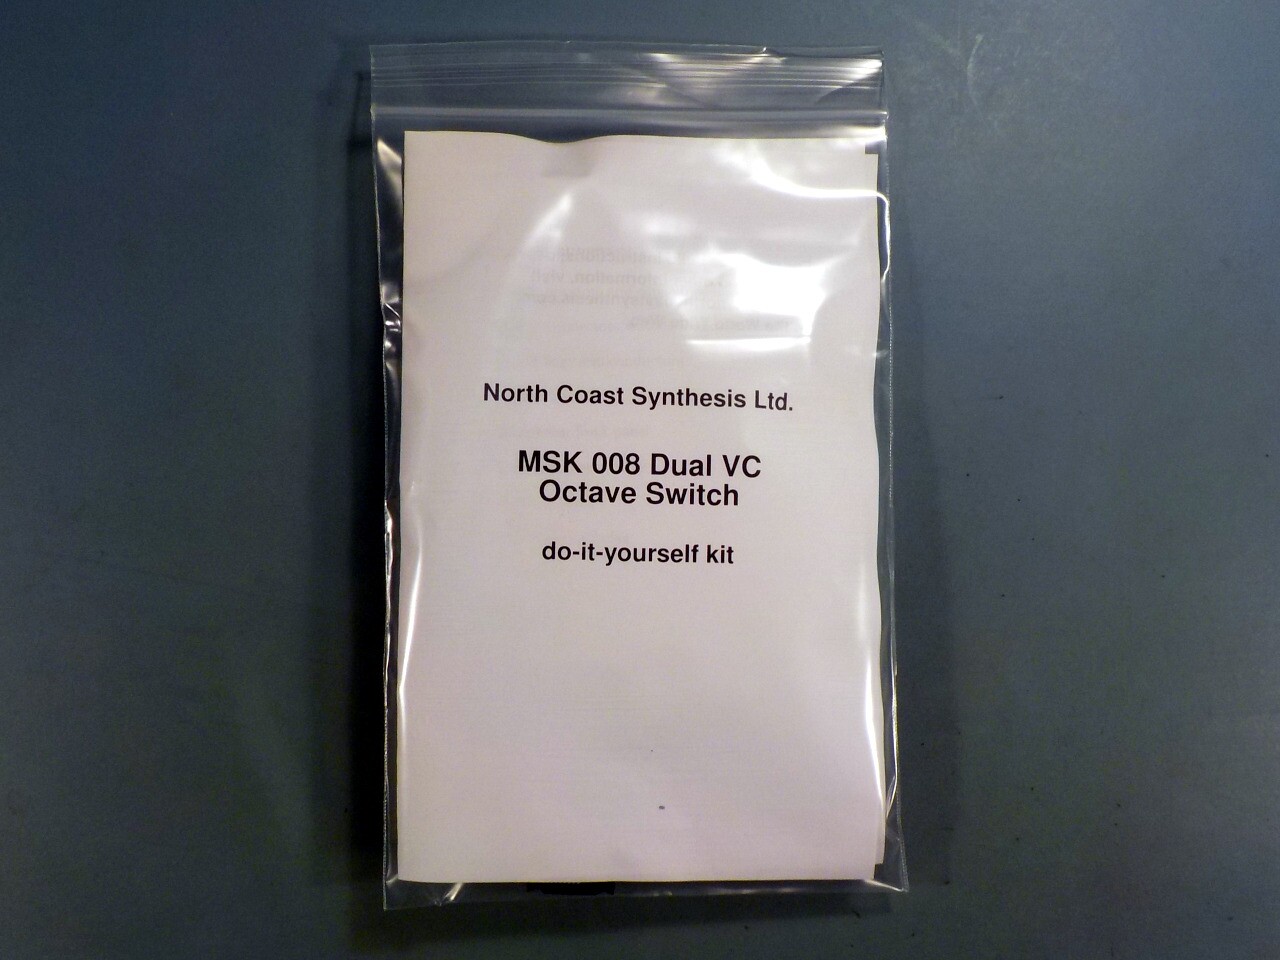 MSK 008 Dual VC Octave Switch SDIY Kit